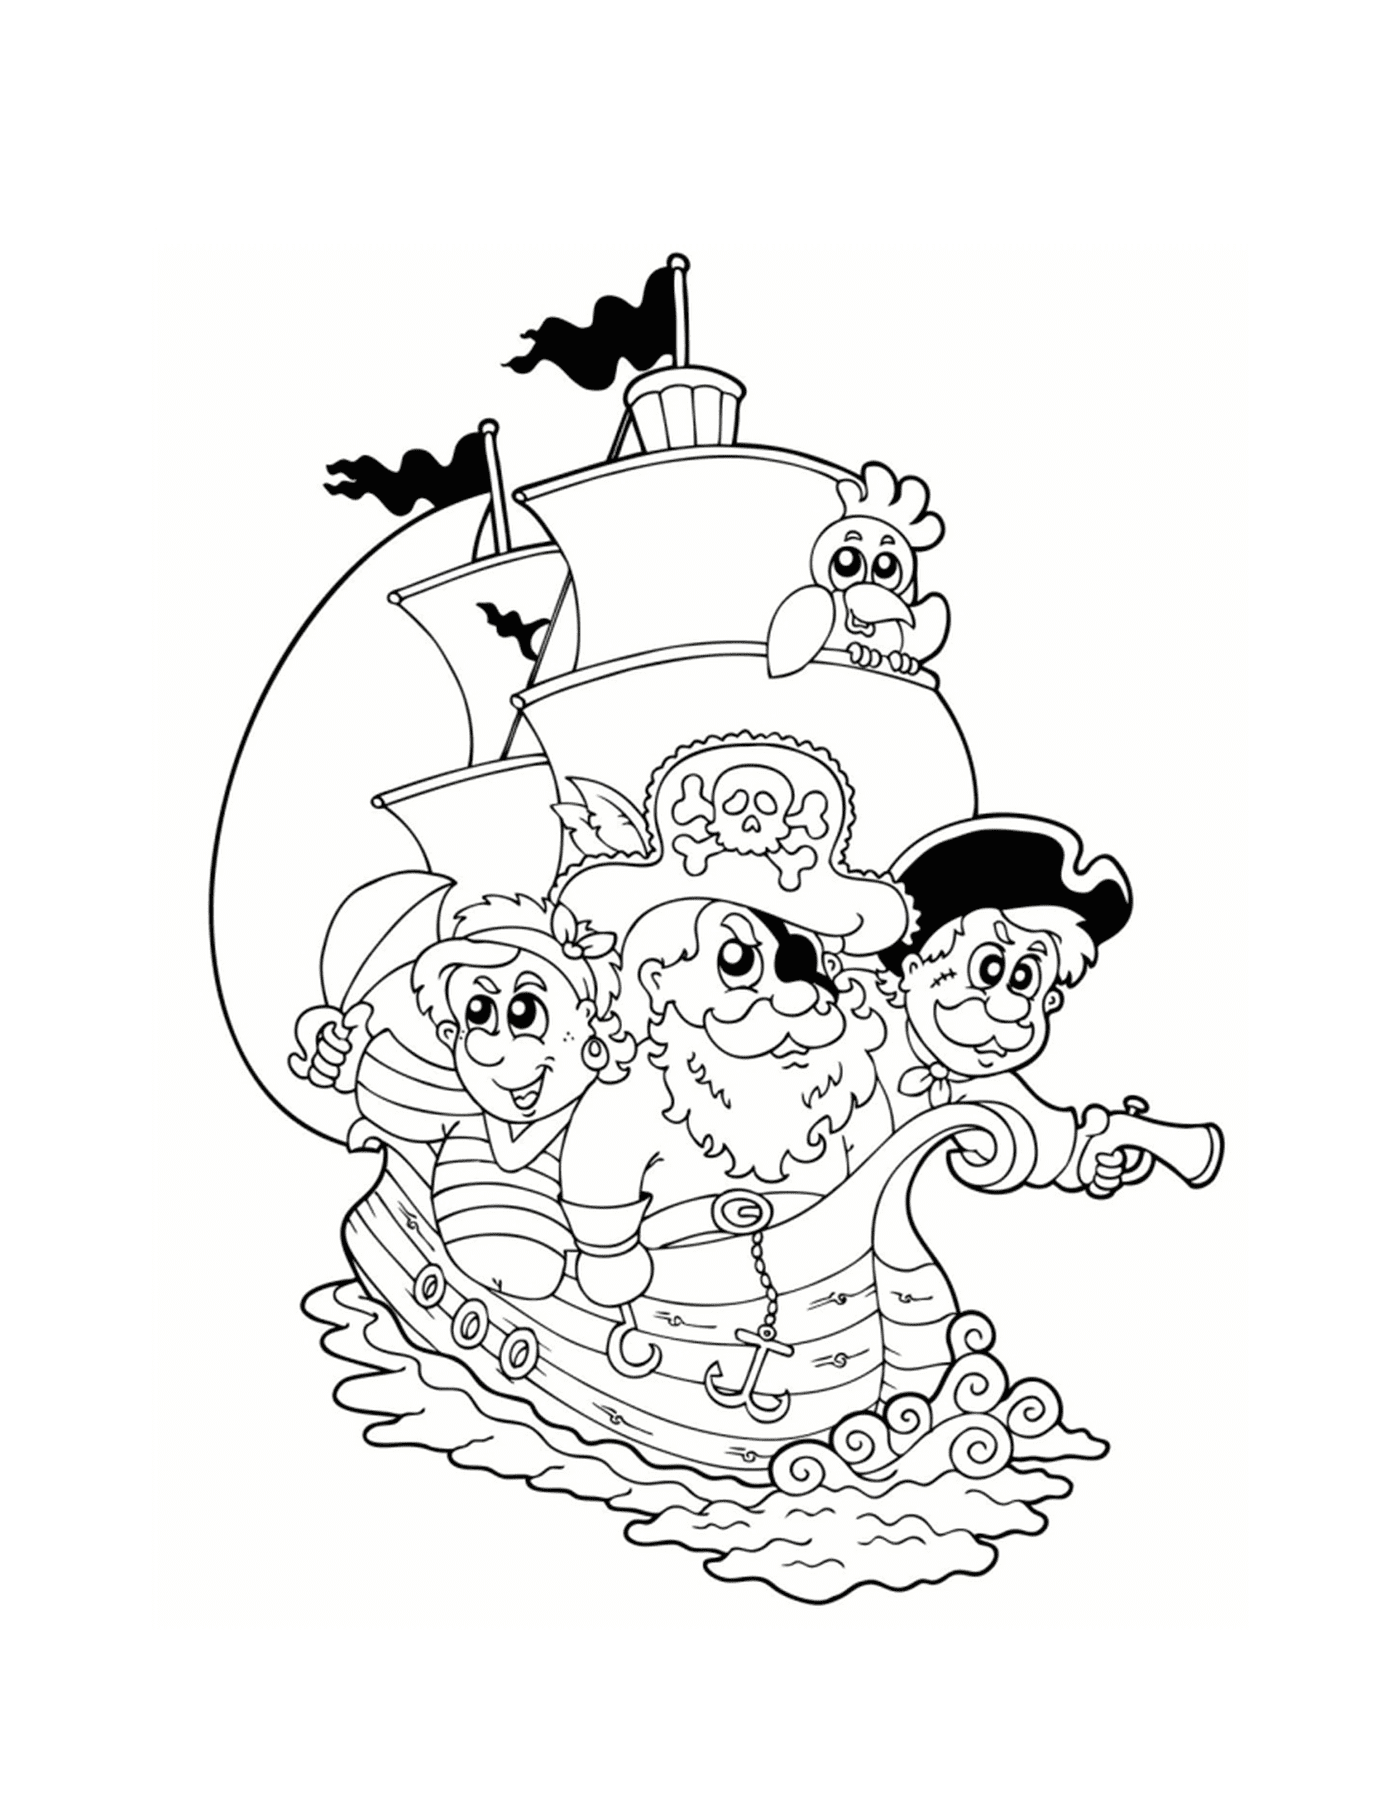  Pirates in boat, adventure at sea 